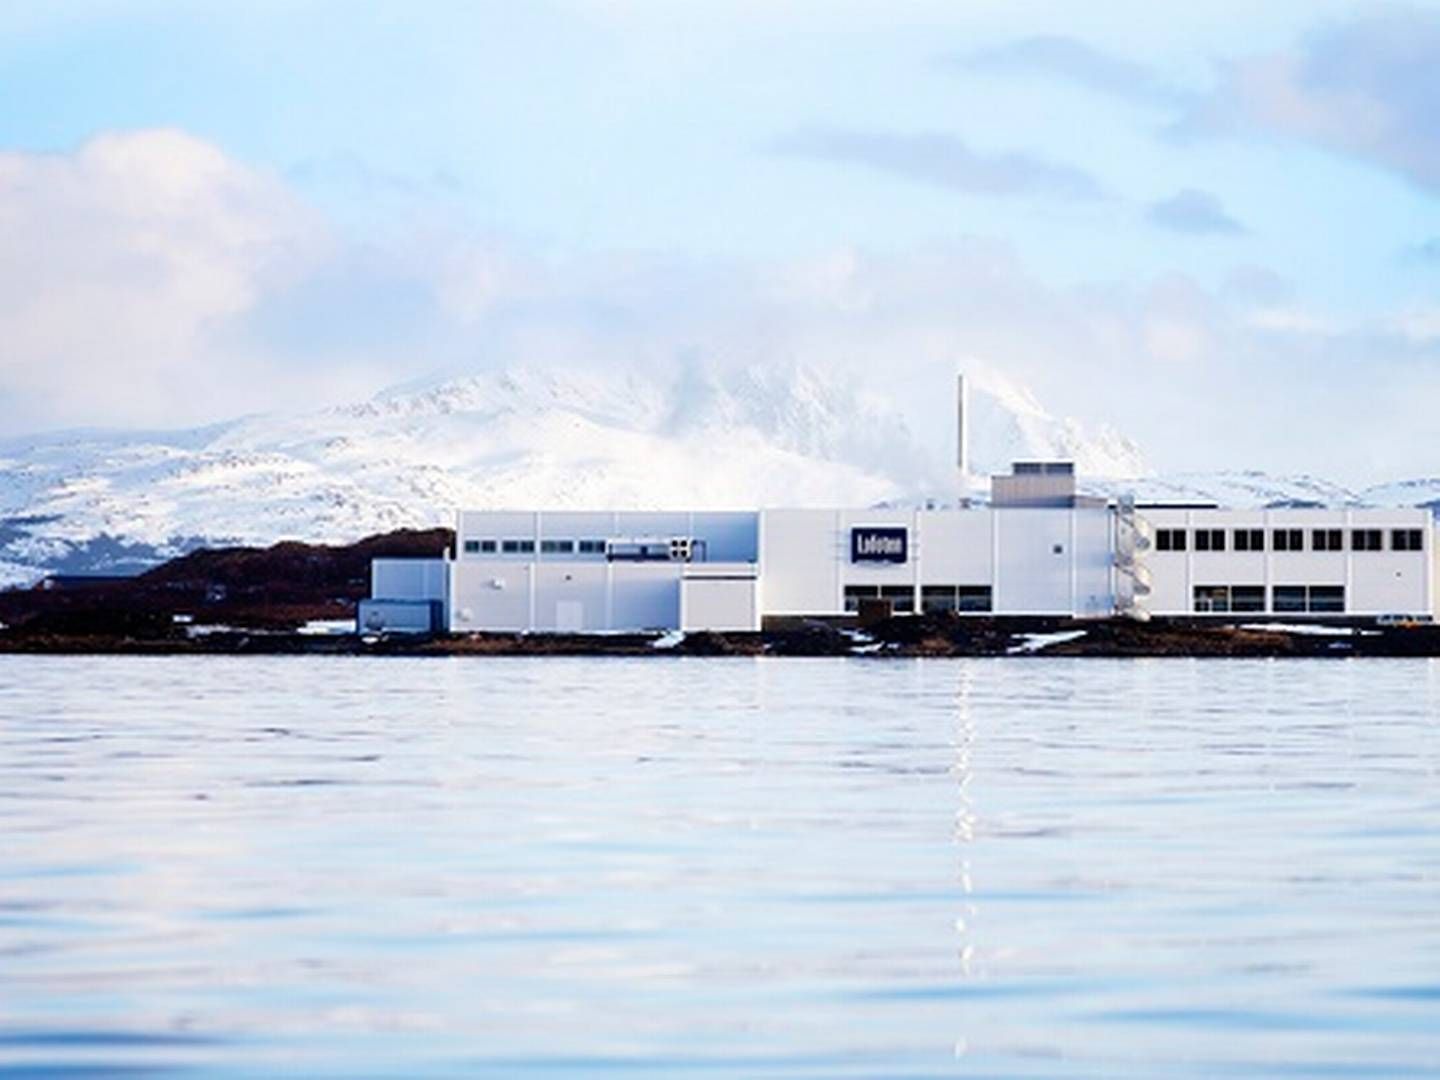 En af Insula's produktionsfaciliteter i Lofoten i Nordnorge. | Foto: PR / Insula